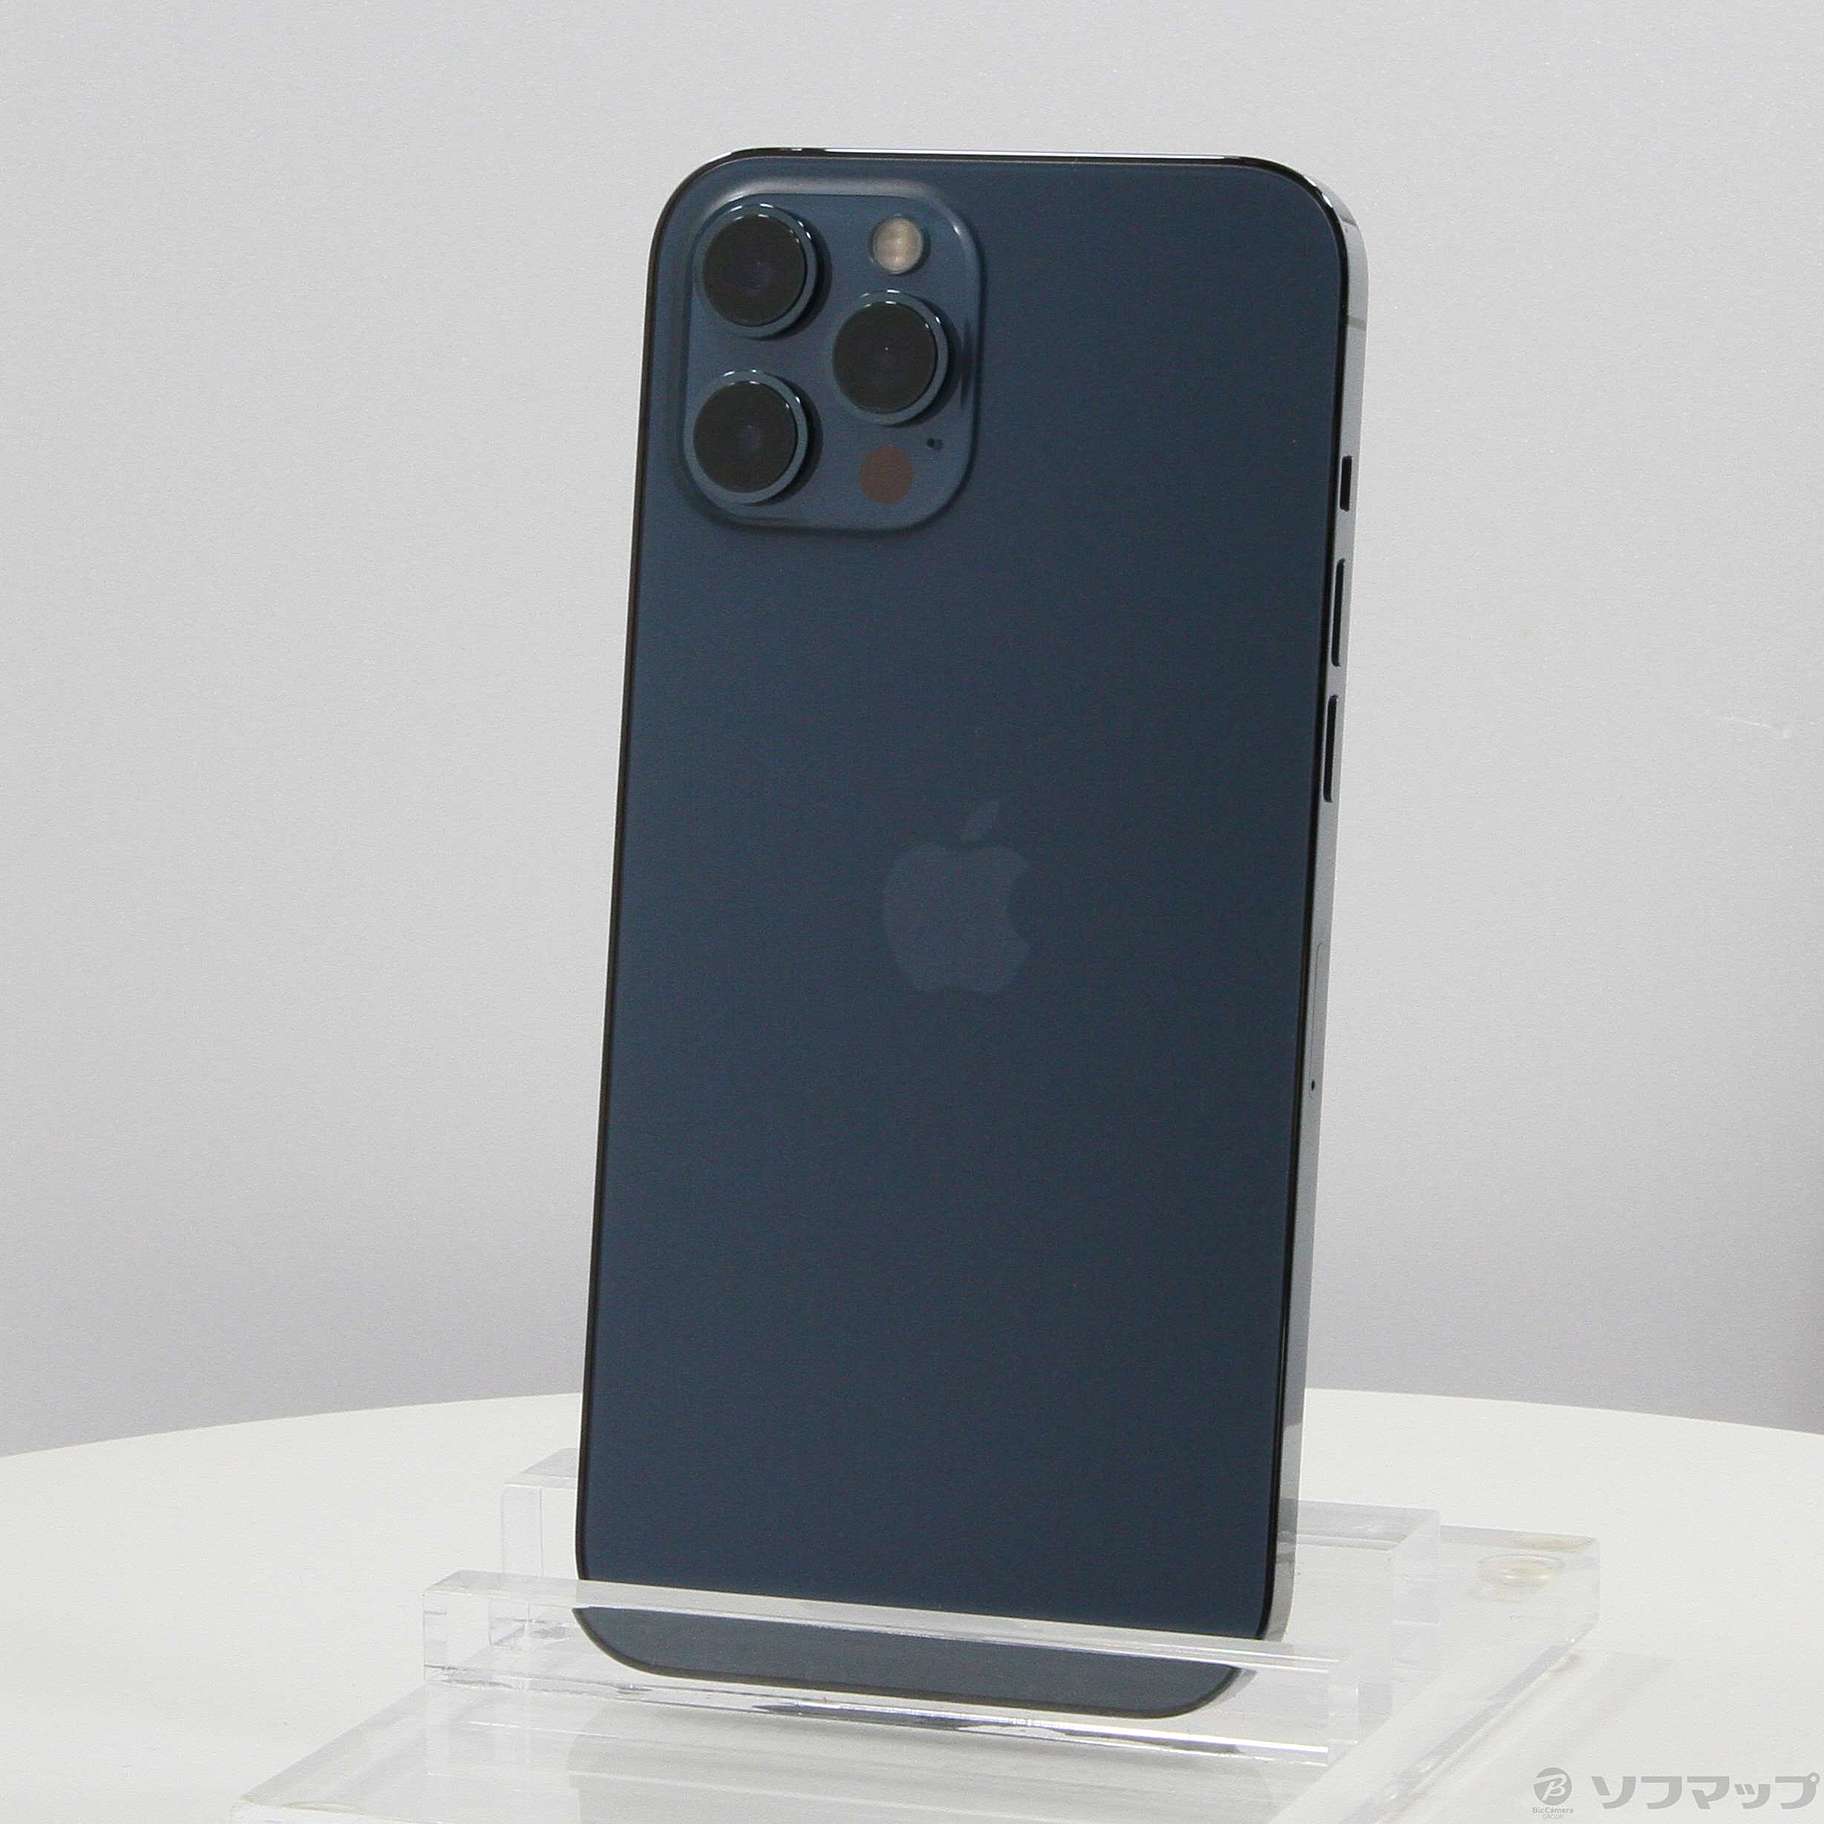 中古】セール対象品 iPhone12 Pro Max 256GB パシフィックブルー